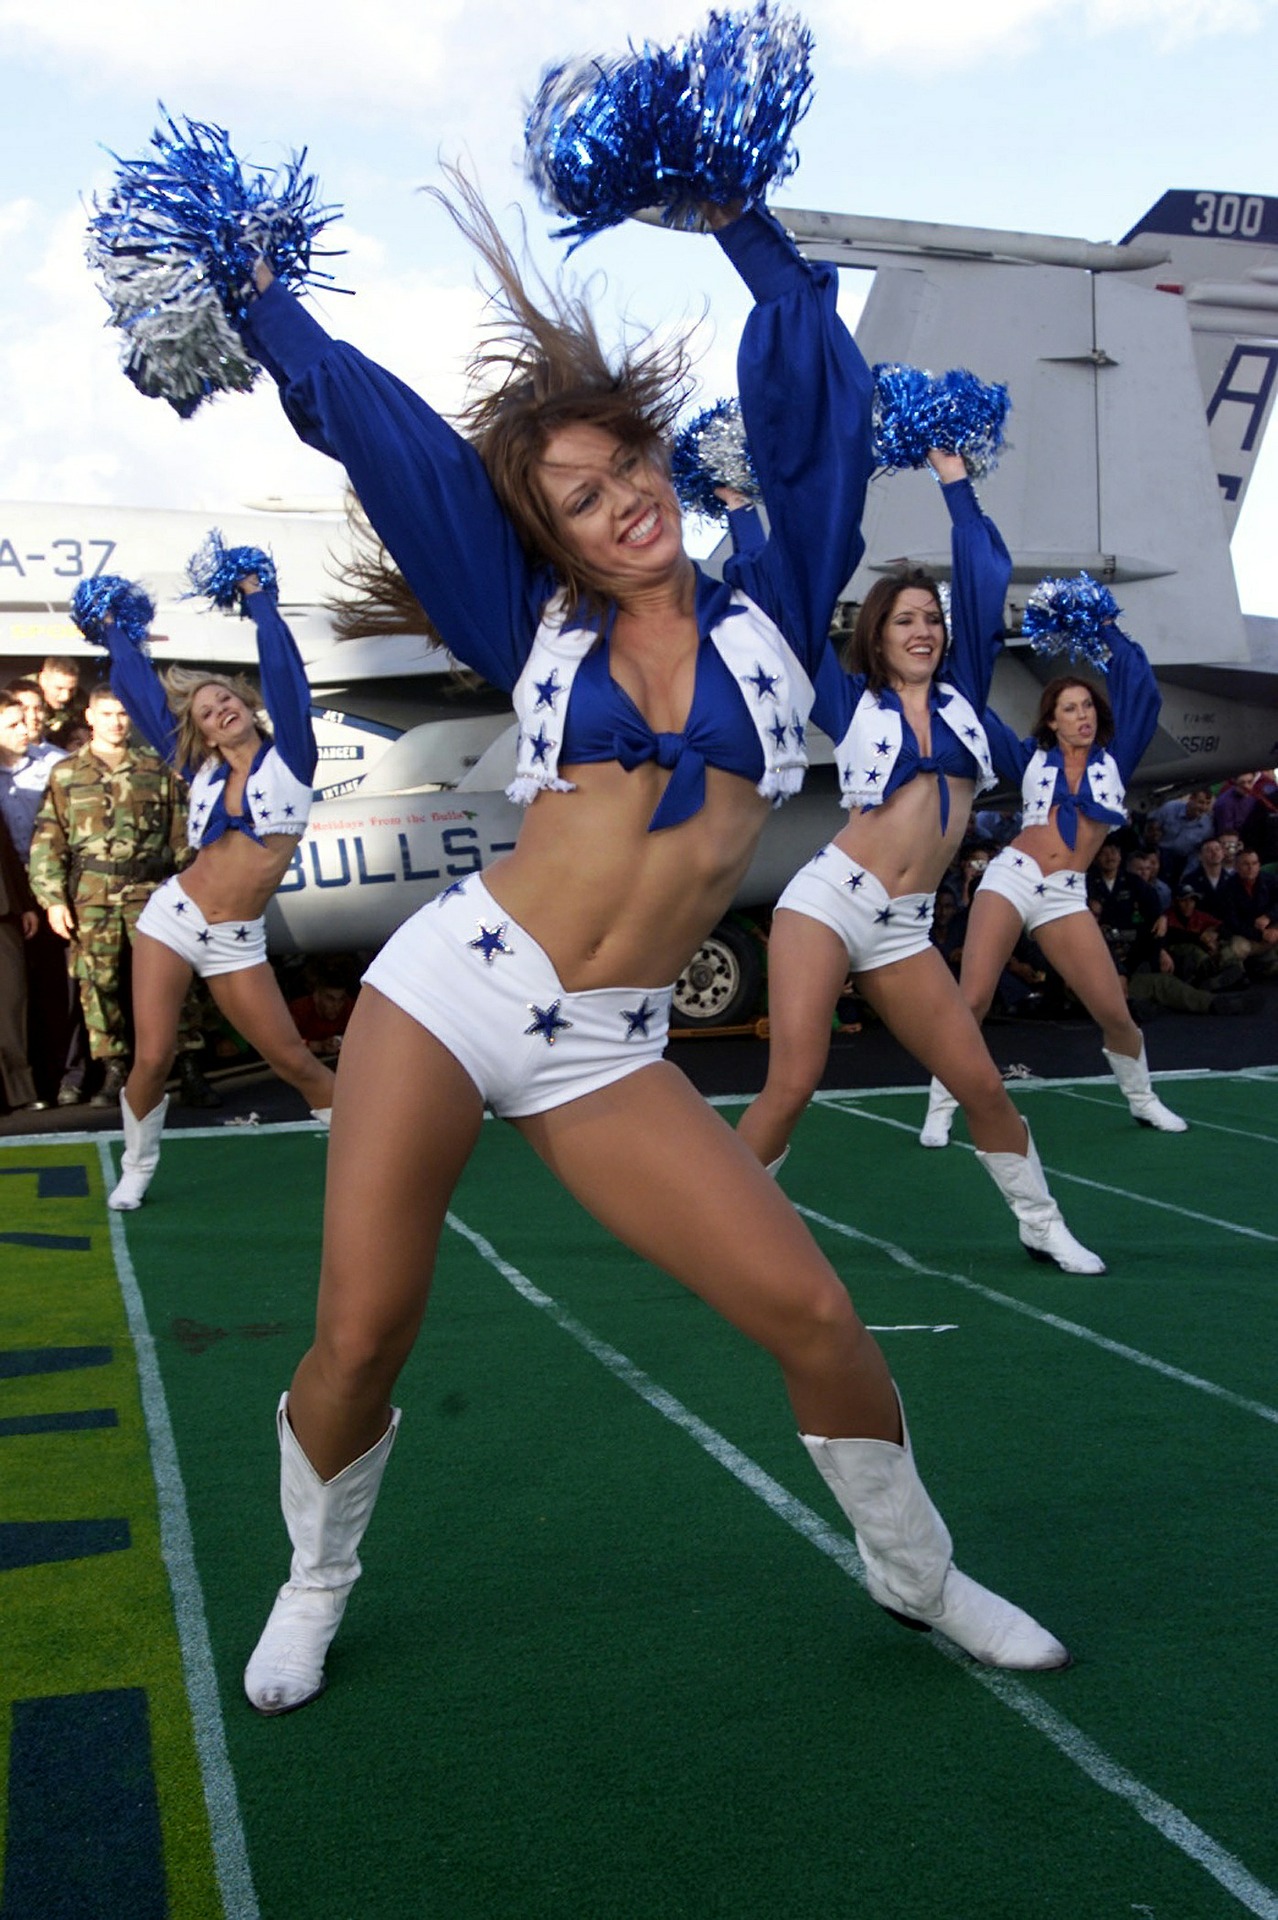 Dallas Cowboys cheerleaders in action.